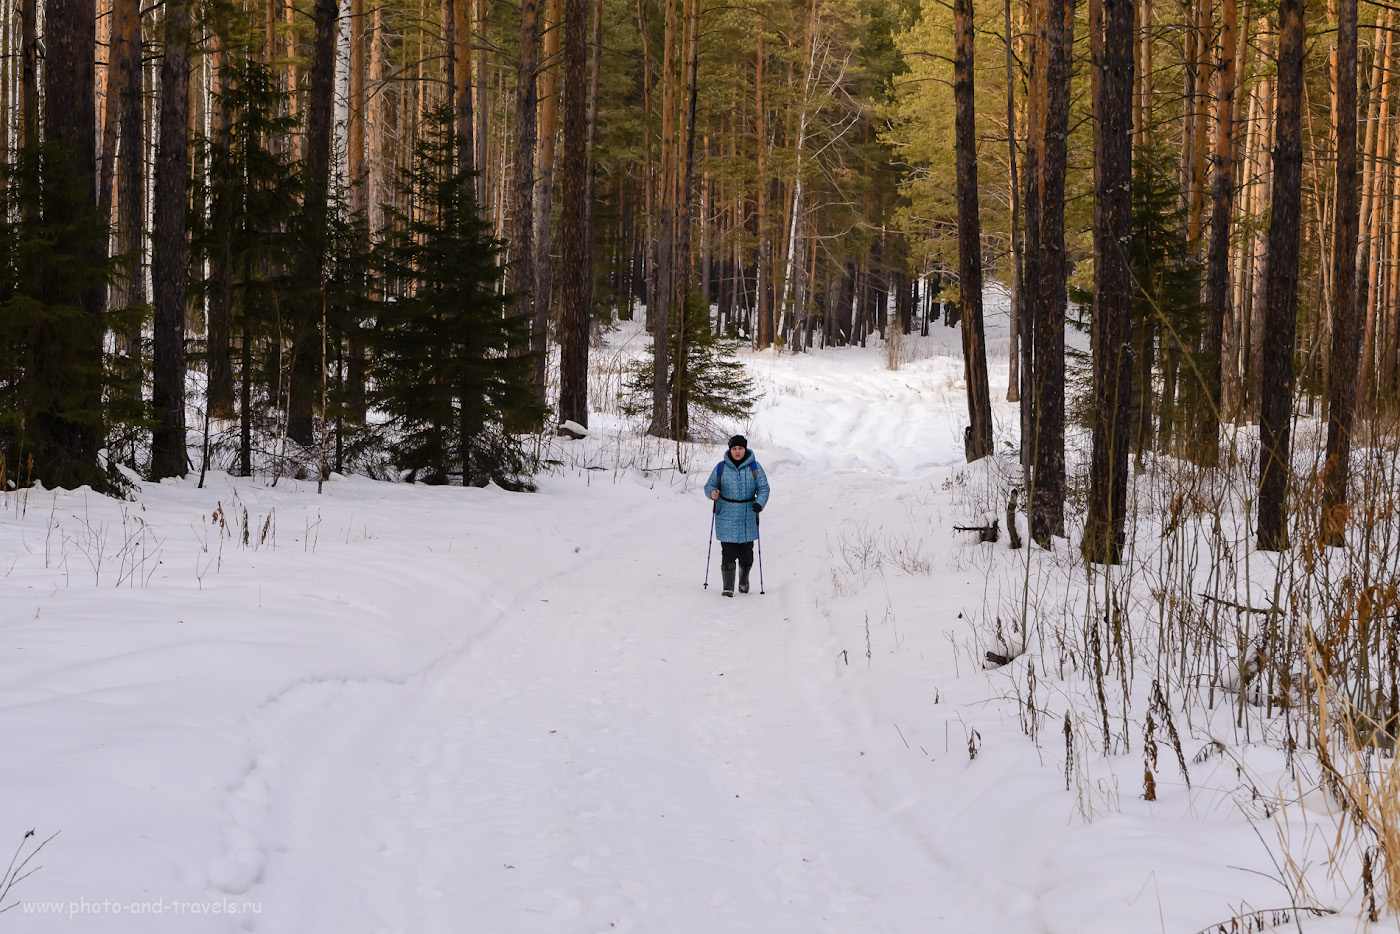 Фотография 3. Прогулка к Шайтан-камню. Так выглядит лесовозная дорога зимой. Отзывы туристов о ПВД в Свердловской области. 1/160, +0.33, 8.0, 900, 52.